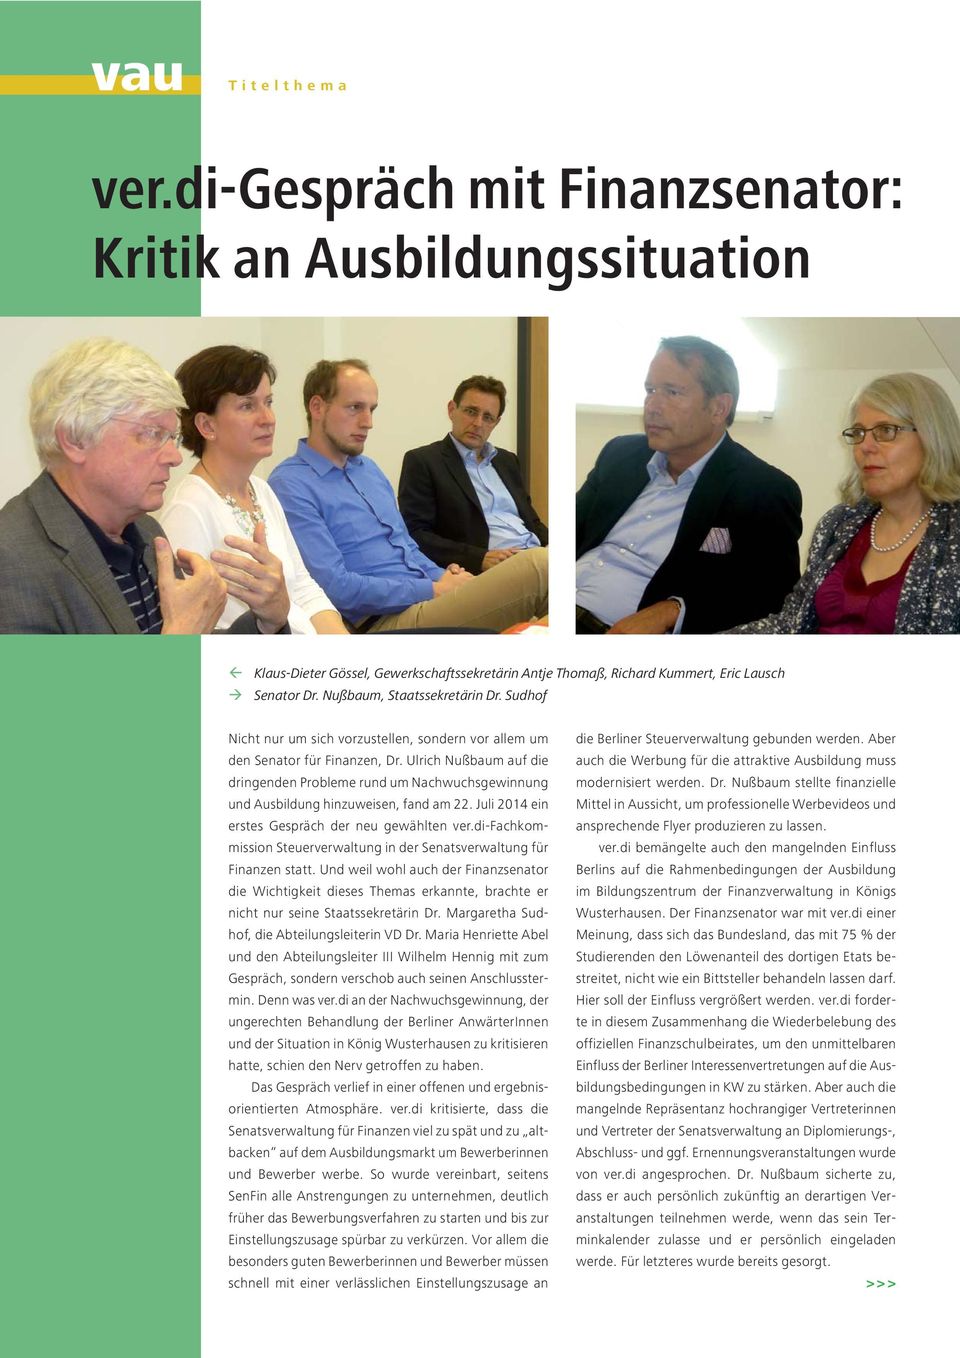 Ulrich Nußbaum auf die dringenden Probleme rund um Nachwuchsgewinnung und Ausbildung hinzuweisen, fand am 22. Juli 2014 ein erstes Gespräch der neu gewählten ver.